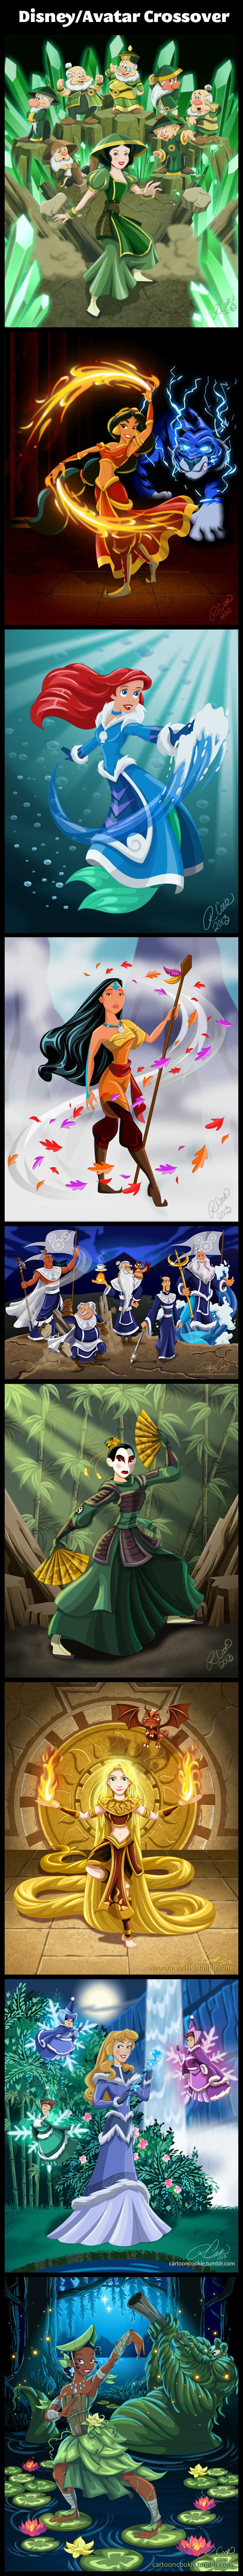 Disney/Avatar Crossover…